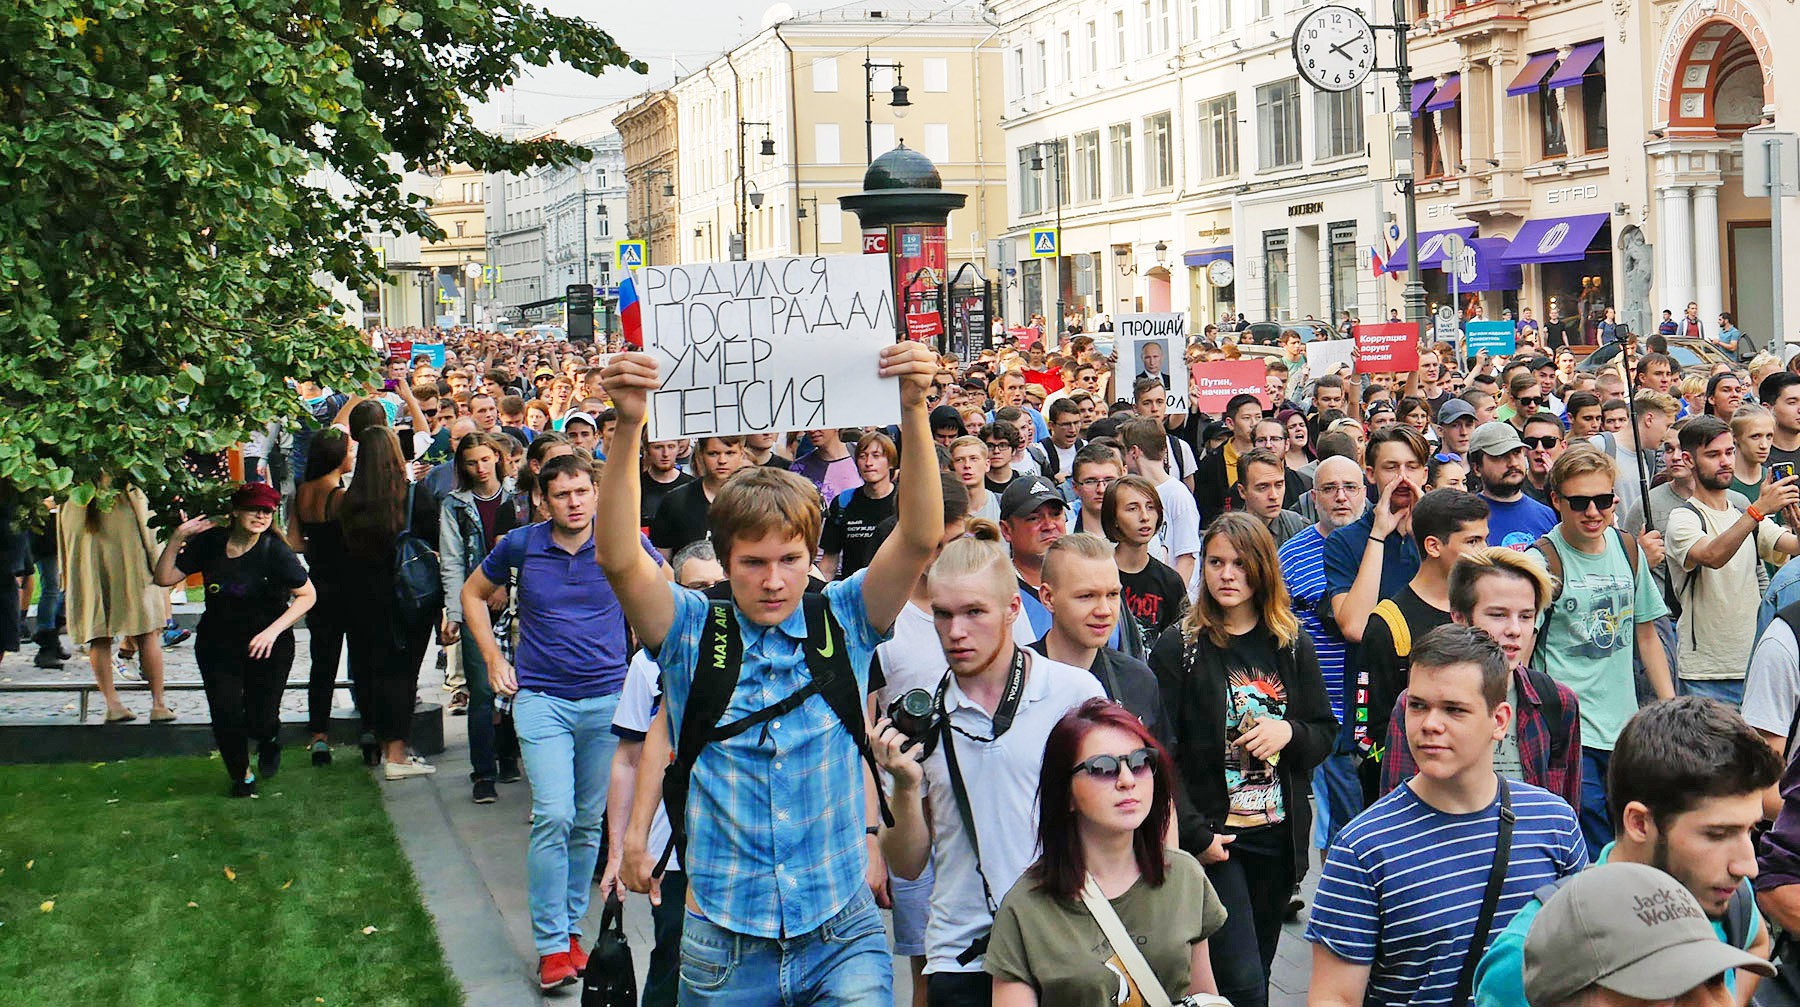 Dailystorm - Без полицейского насилия, но с Жириновским в модном галстуке и школьниками-заводилами